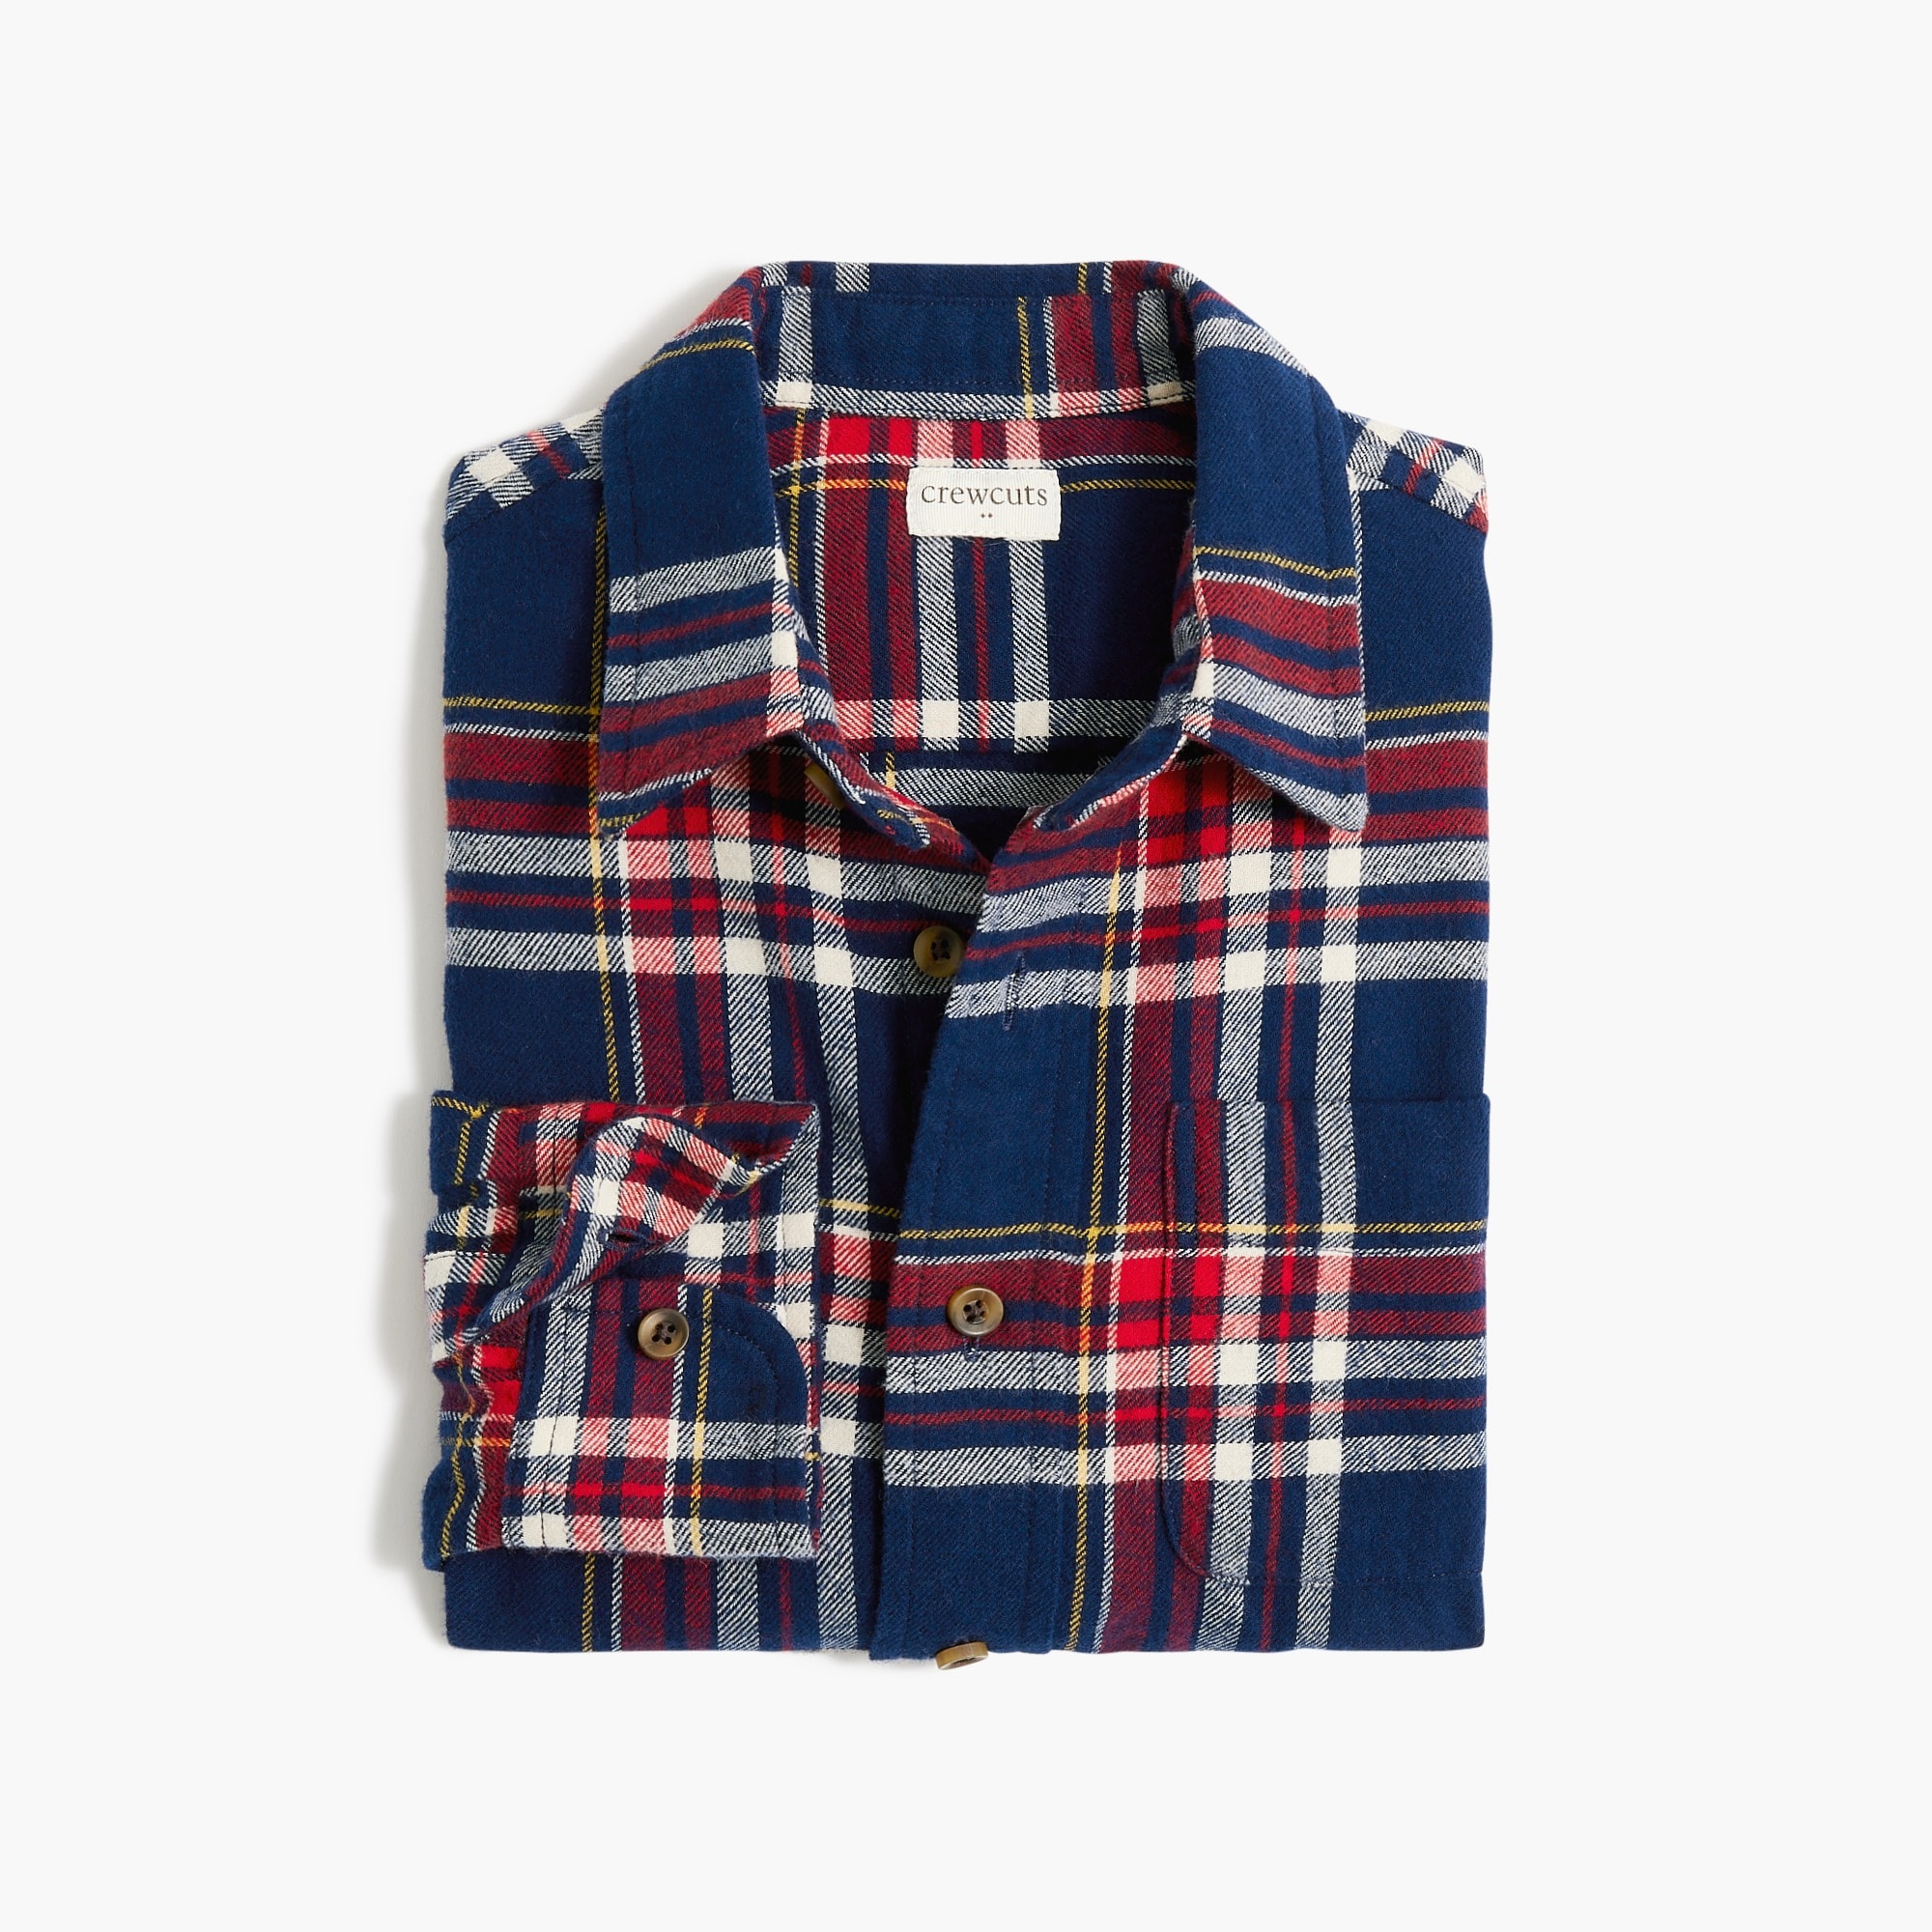 Boys' flannel shirt